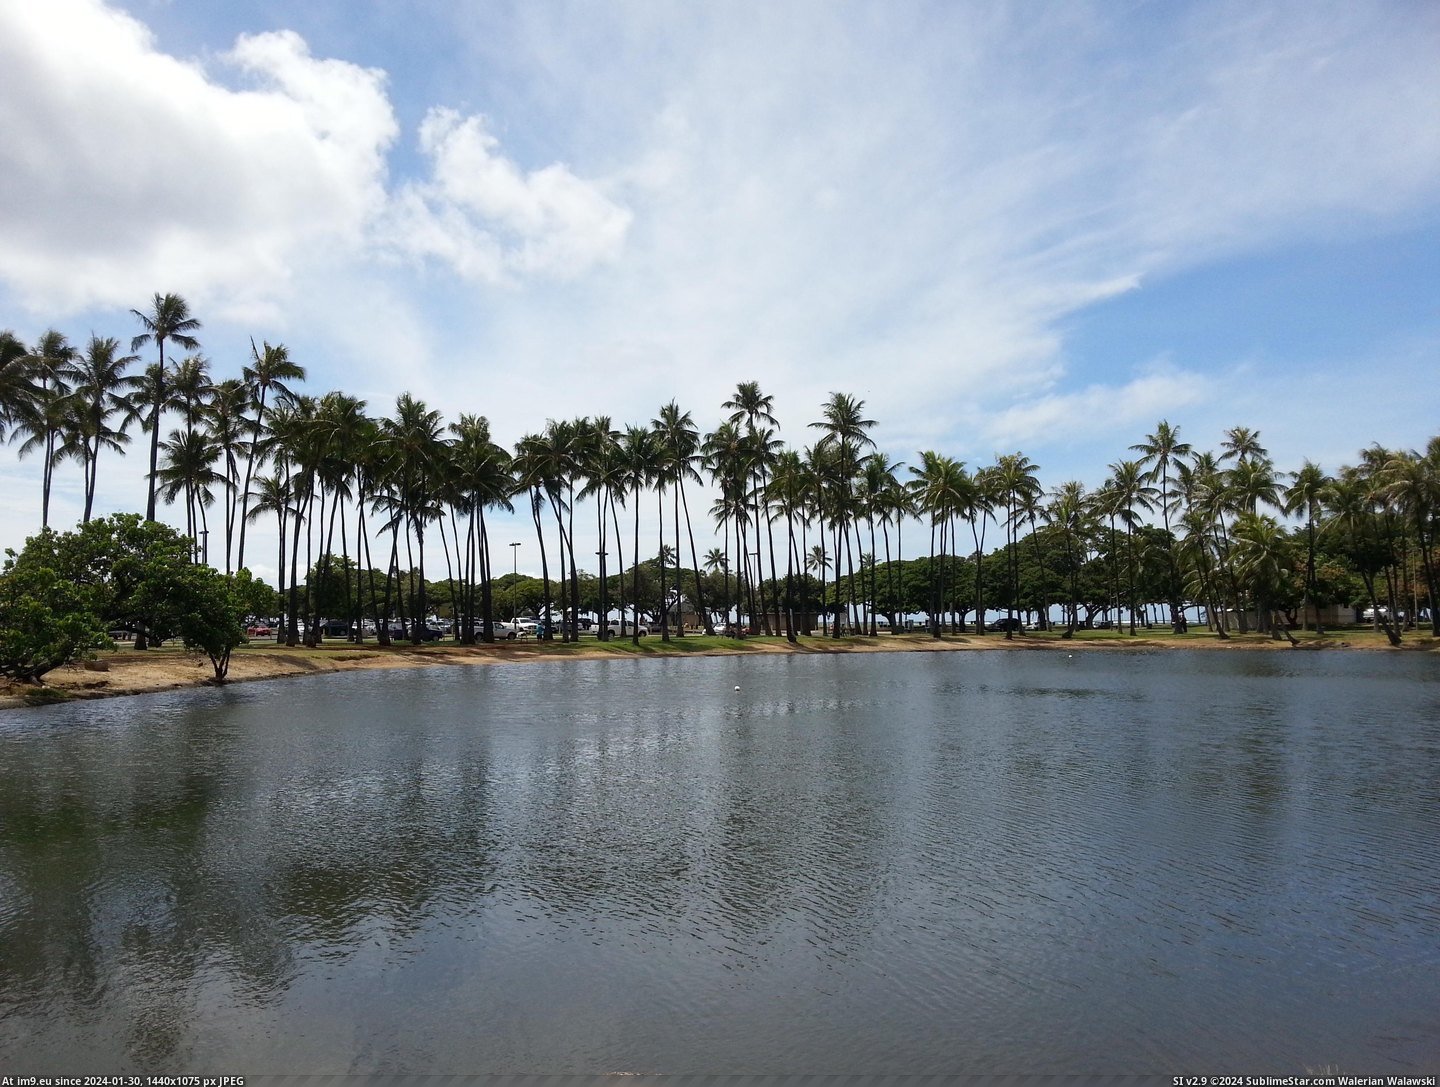  #Image  20131002_115937 Pic. (Obraz z album Hawaii))